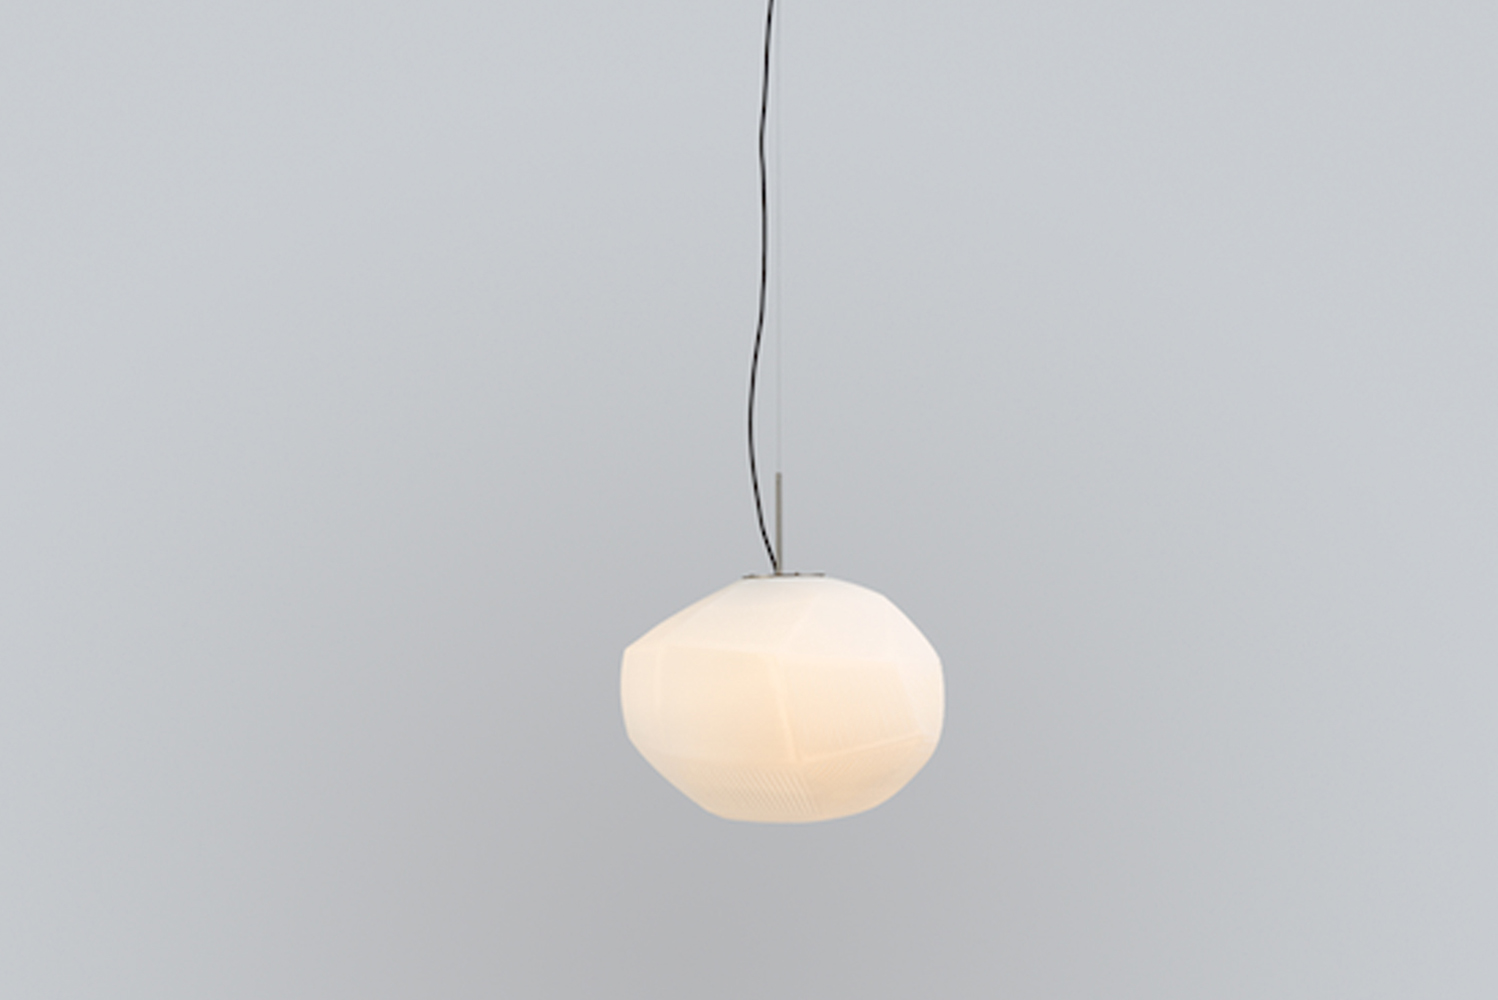 Nichetto Studio launched the Gmo lamp 